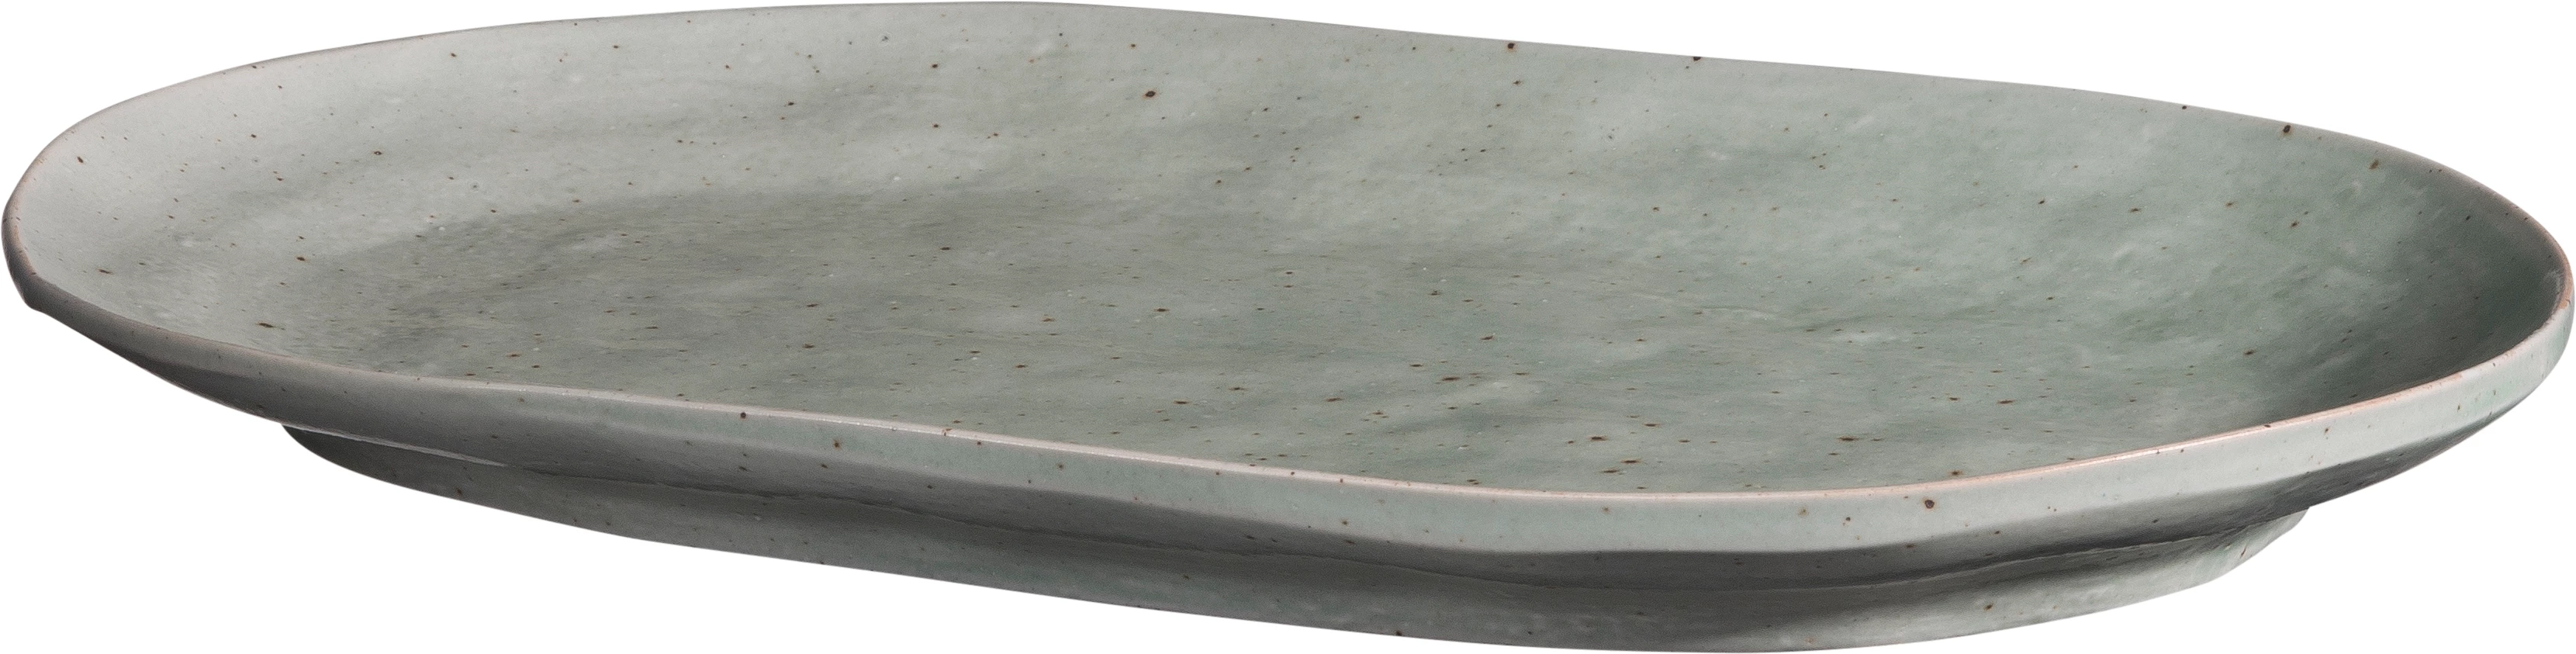 Leafs tallerken, oval, grøn, 29,5 x 18 cm